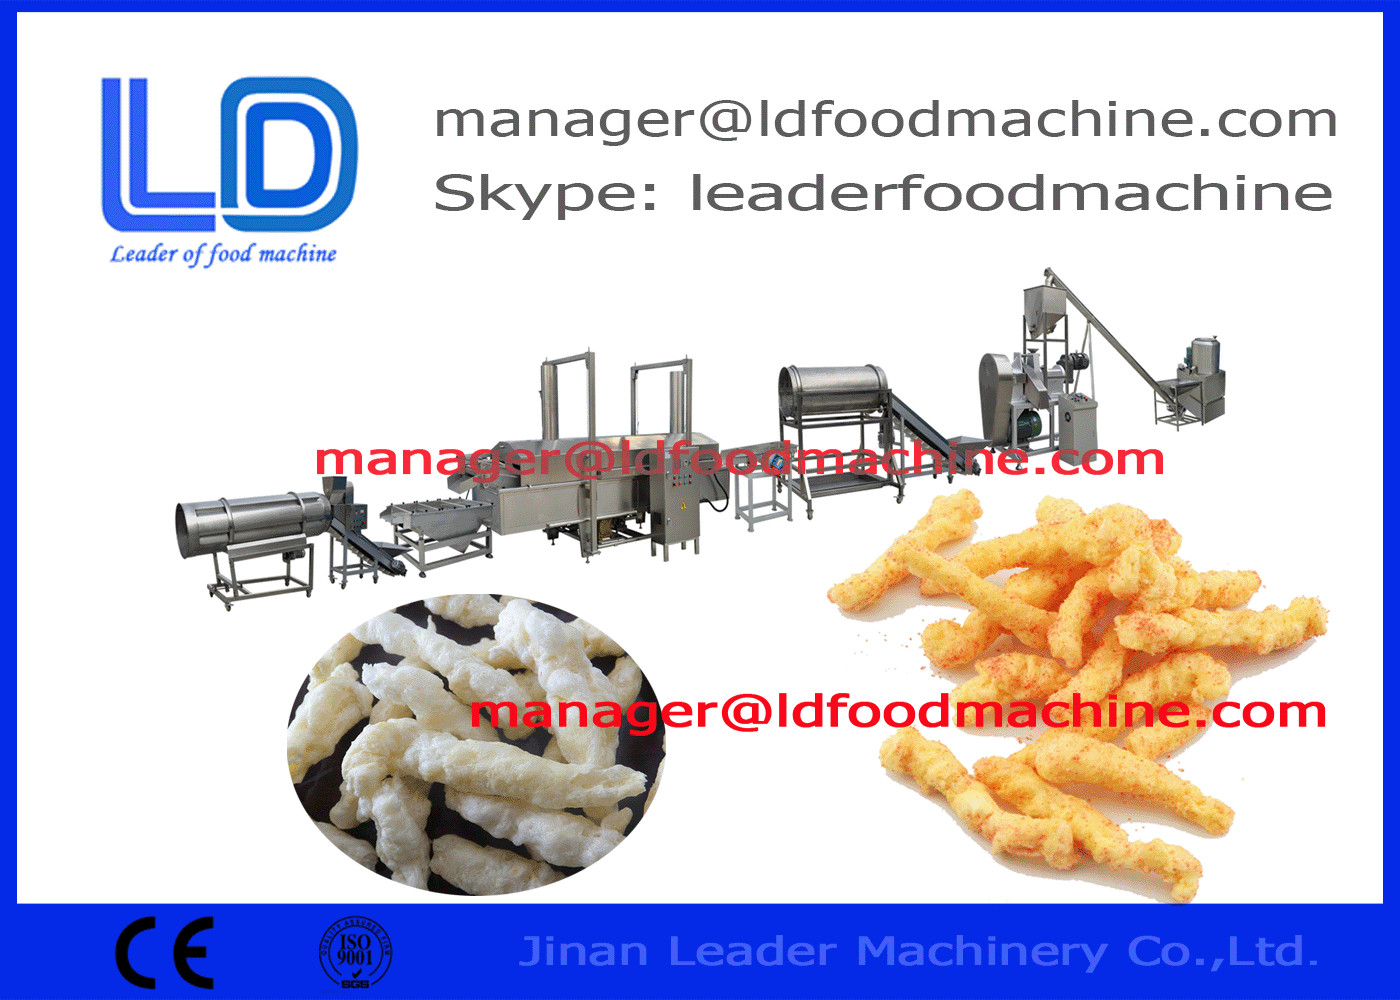 Otomatik Kurkure Yapma Makinesi Nik naks / Mısır Kıvırma Mendil Ekstrüzyonlu Atıştırmalık Makinaları 230kg / s